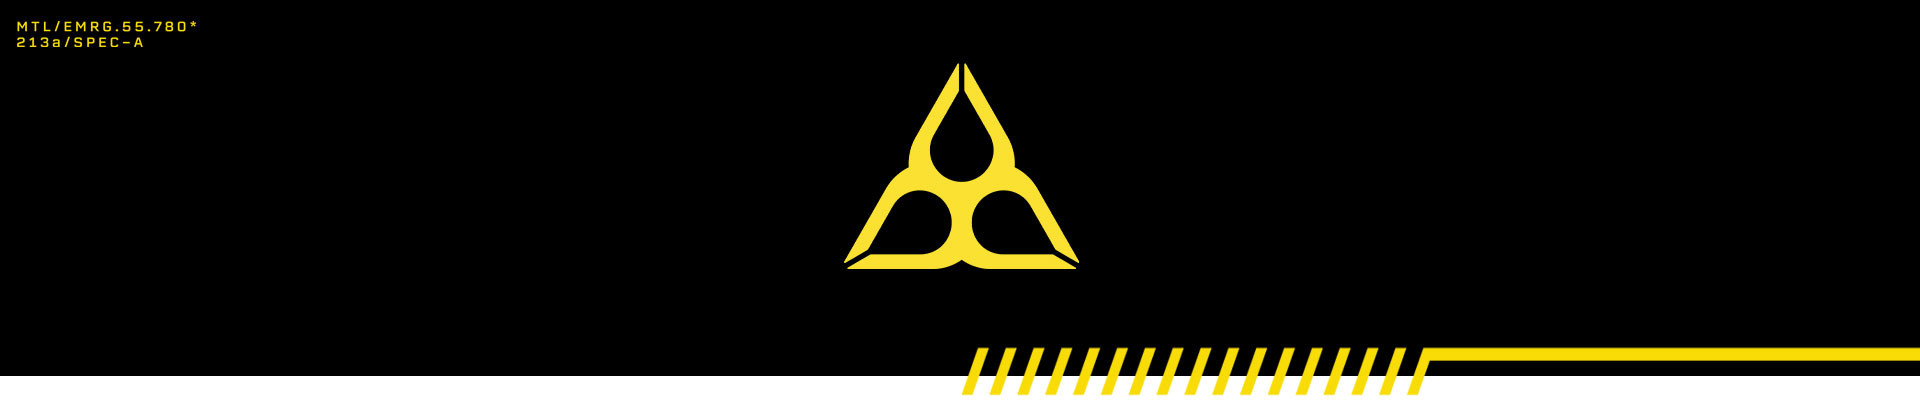 Informação de leitura do computador laranja, apresentada com três gotas de lágrima dispostas num símbolo de perigo.